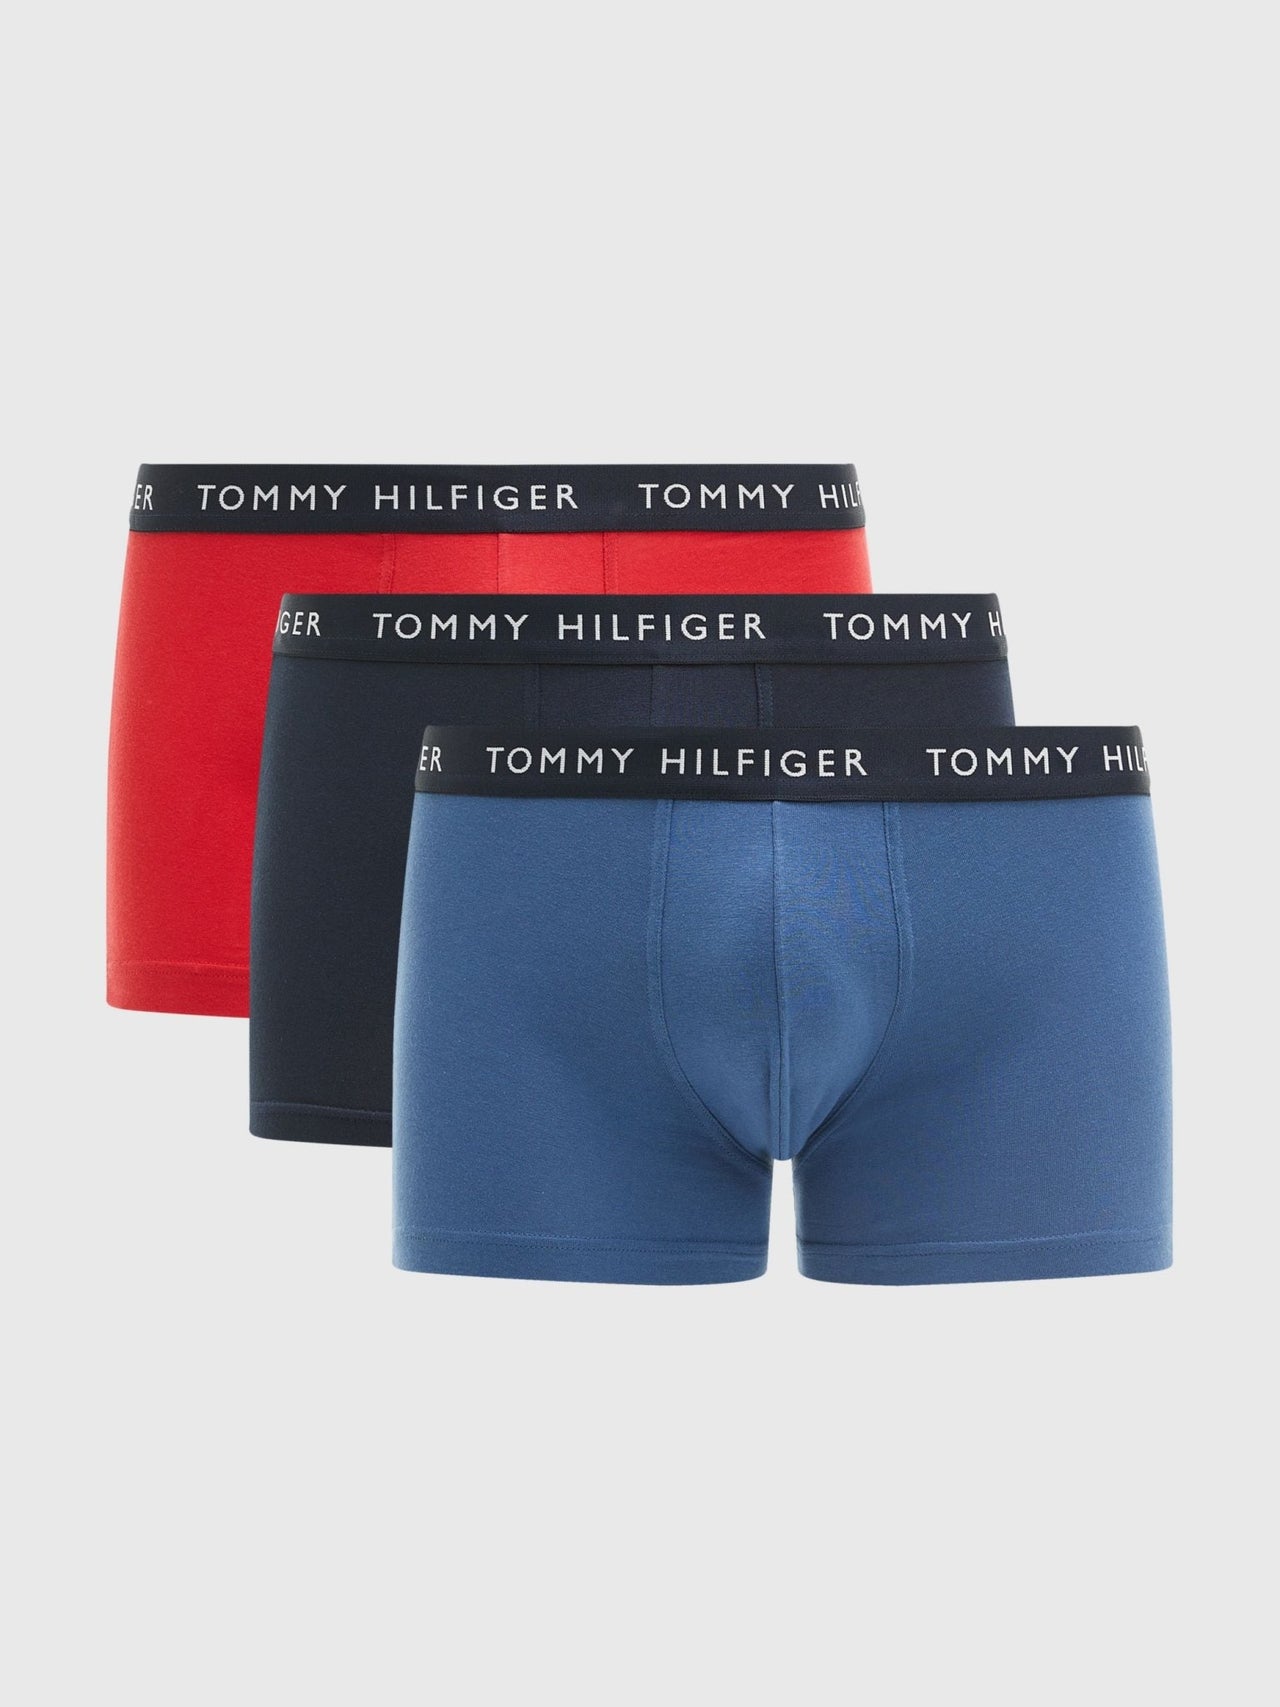  Tommy Hilfiger Pack de 3 calzoncillos hombre Slip tripack ropa  interior Item UM0UM01655 3P WB Brief : Ropa, Zapatos y Joyería